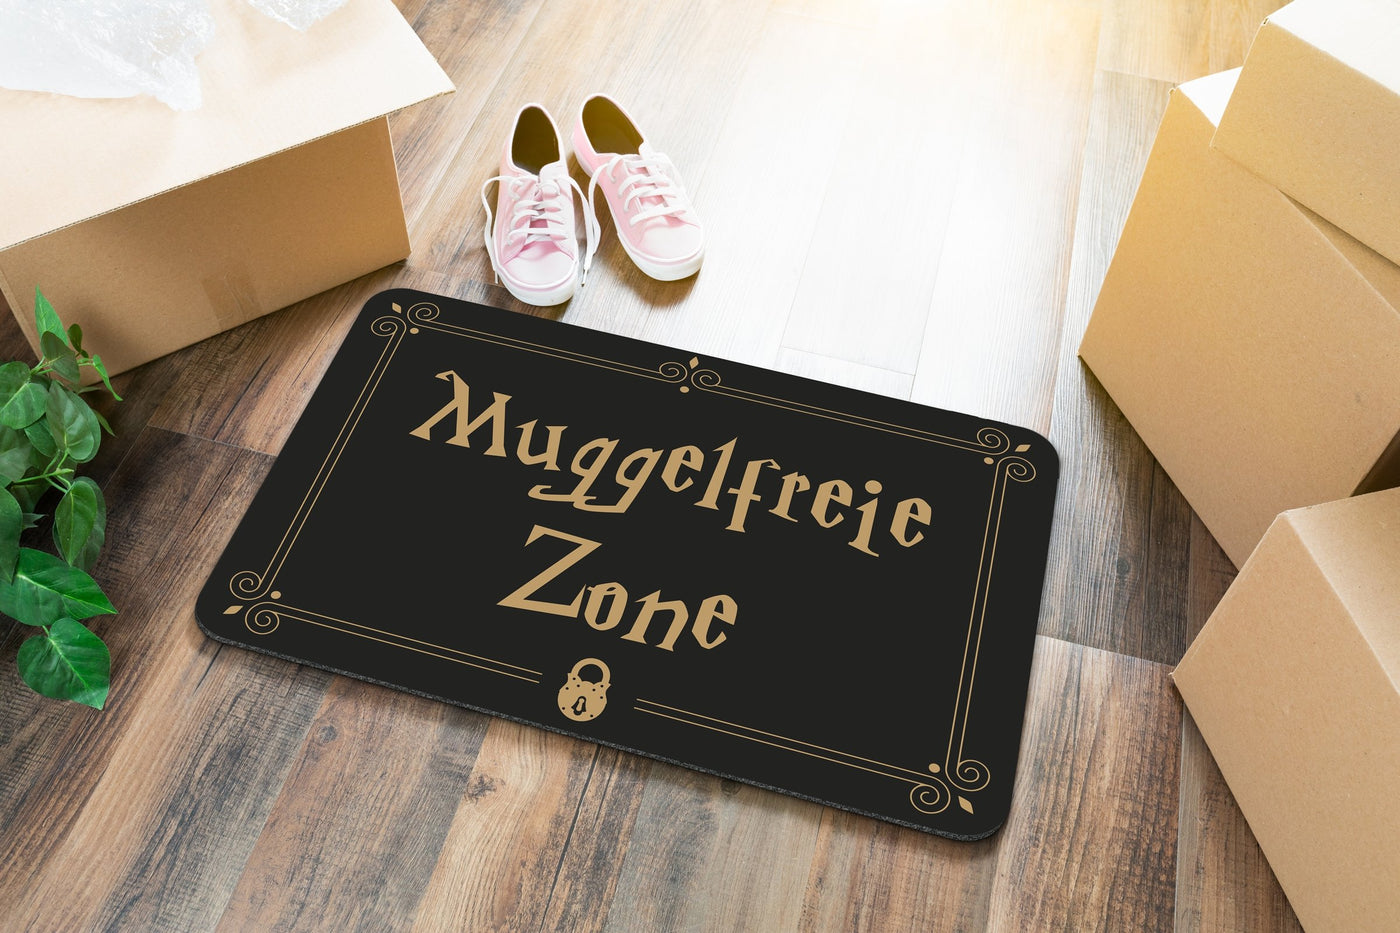 Bild: Fußmatte - Muggelfreie Zone Geschenkidee